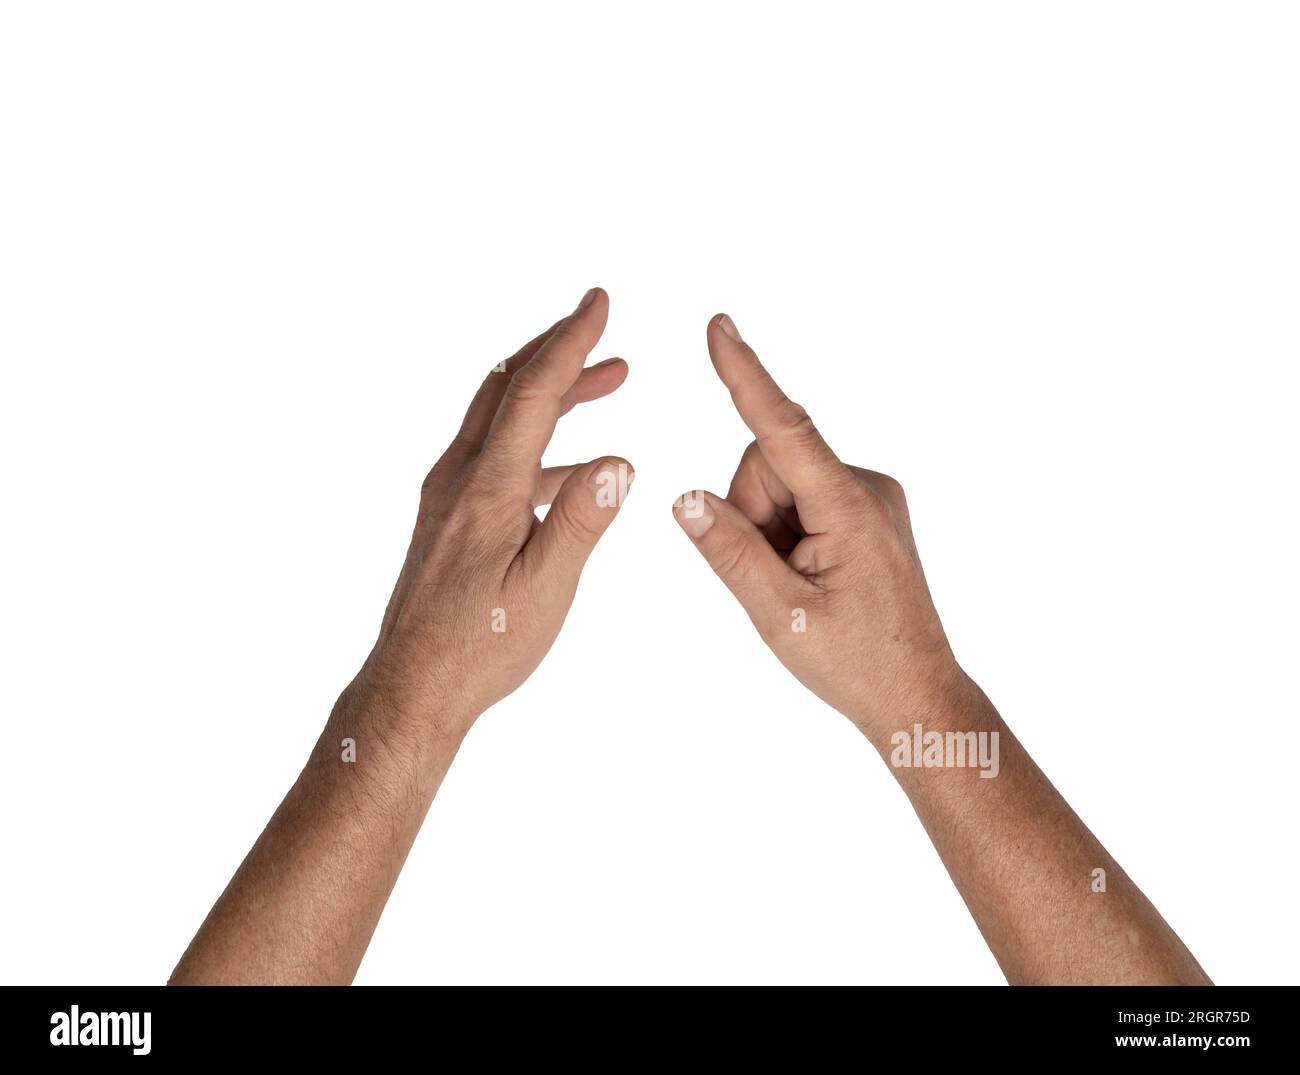 Zwei männliche Hände auf einem transparenten Hintergrund Stockfoto